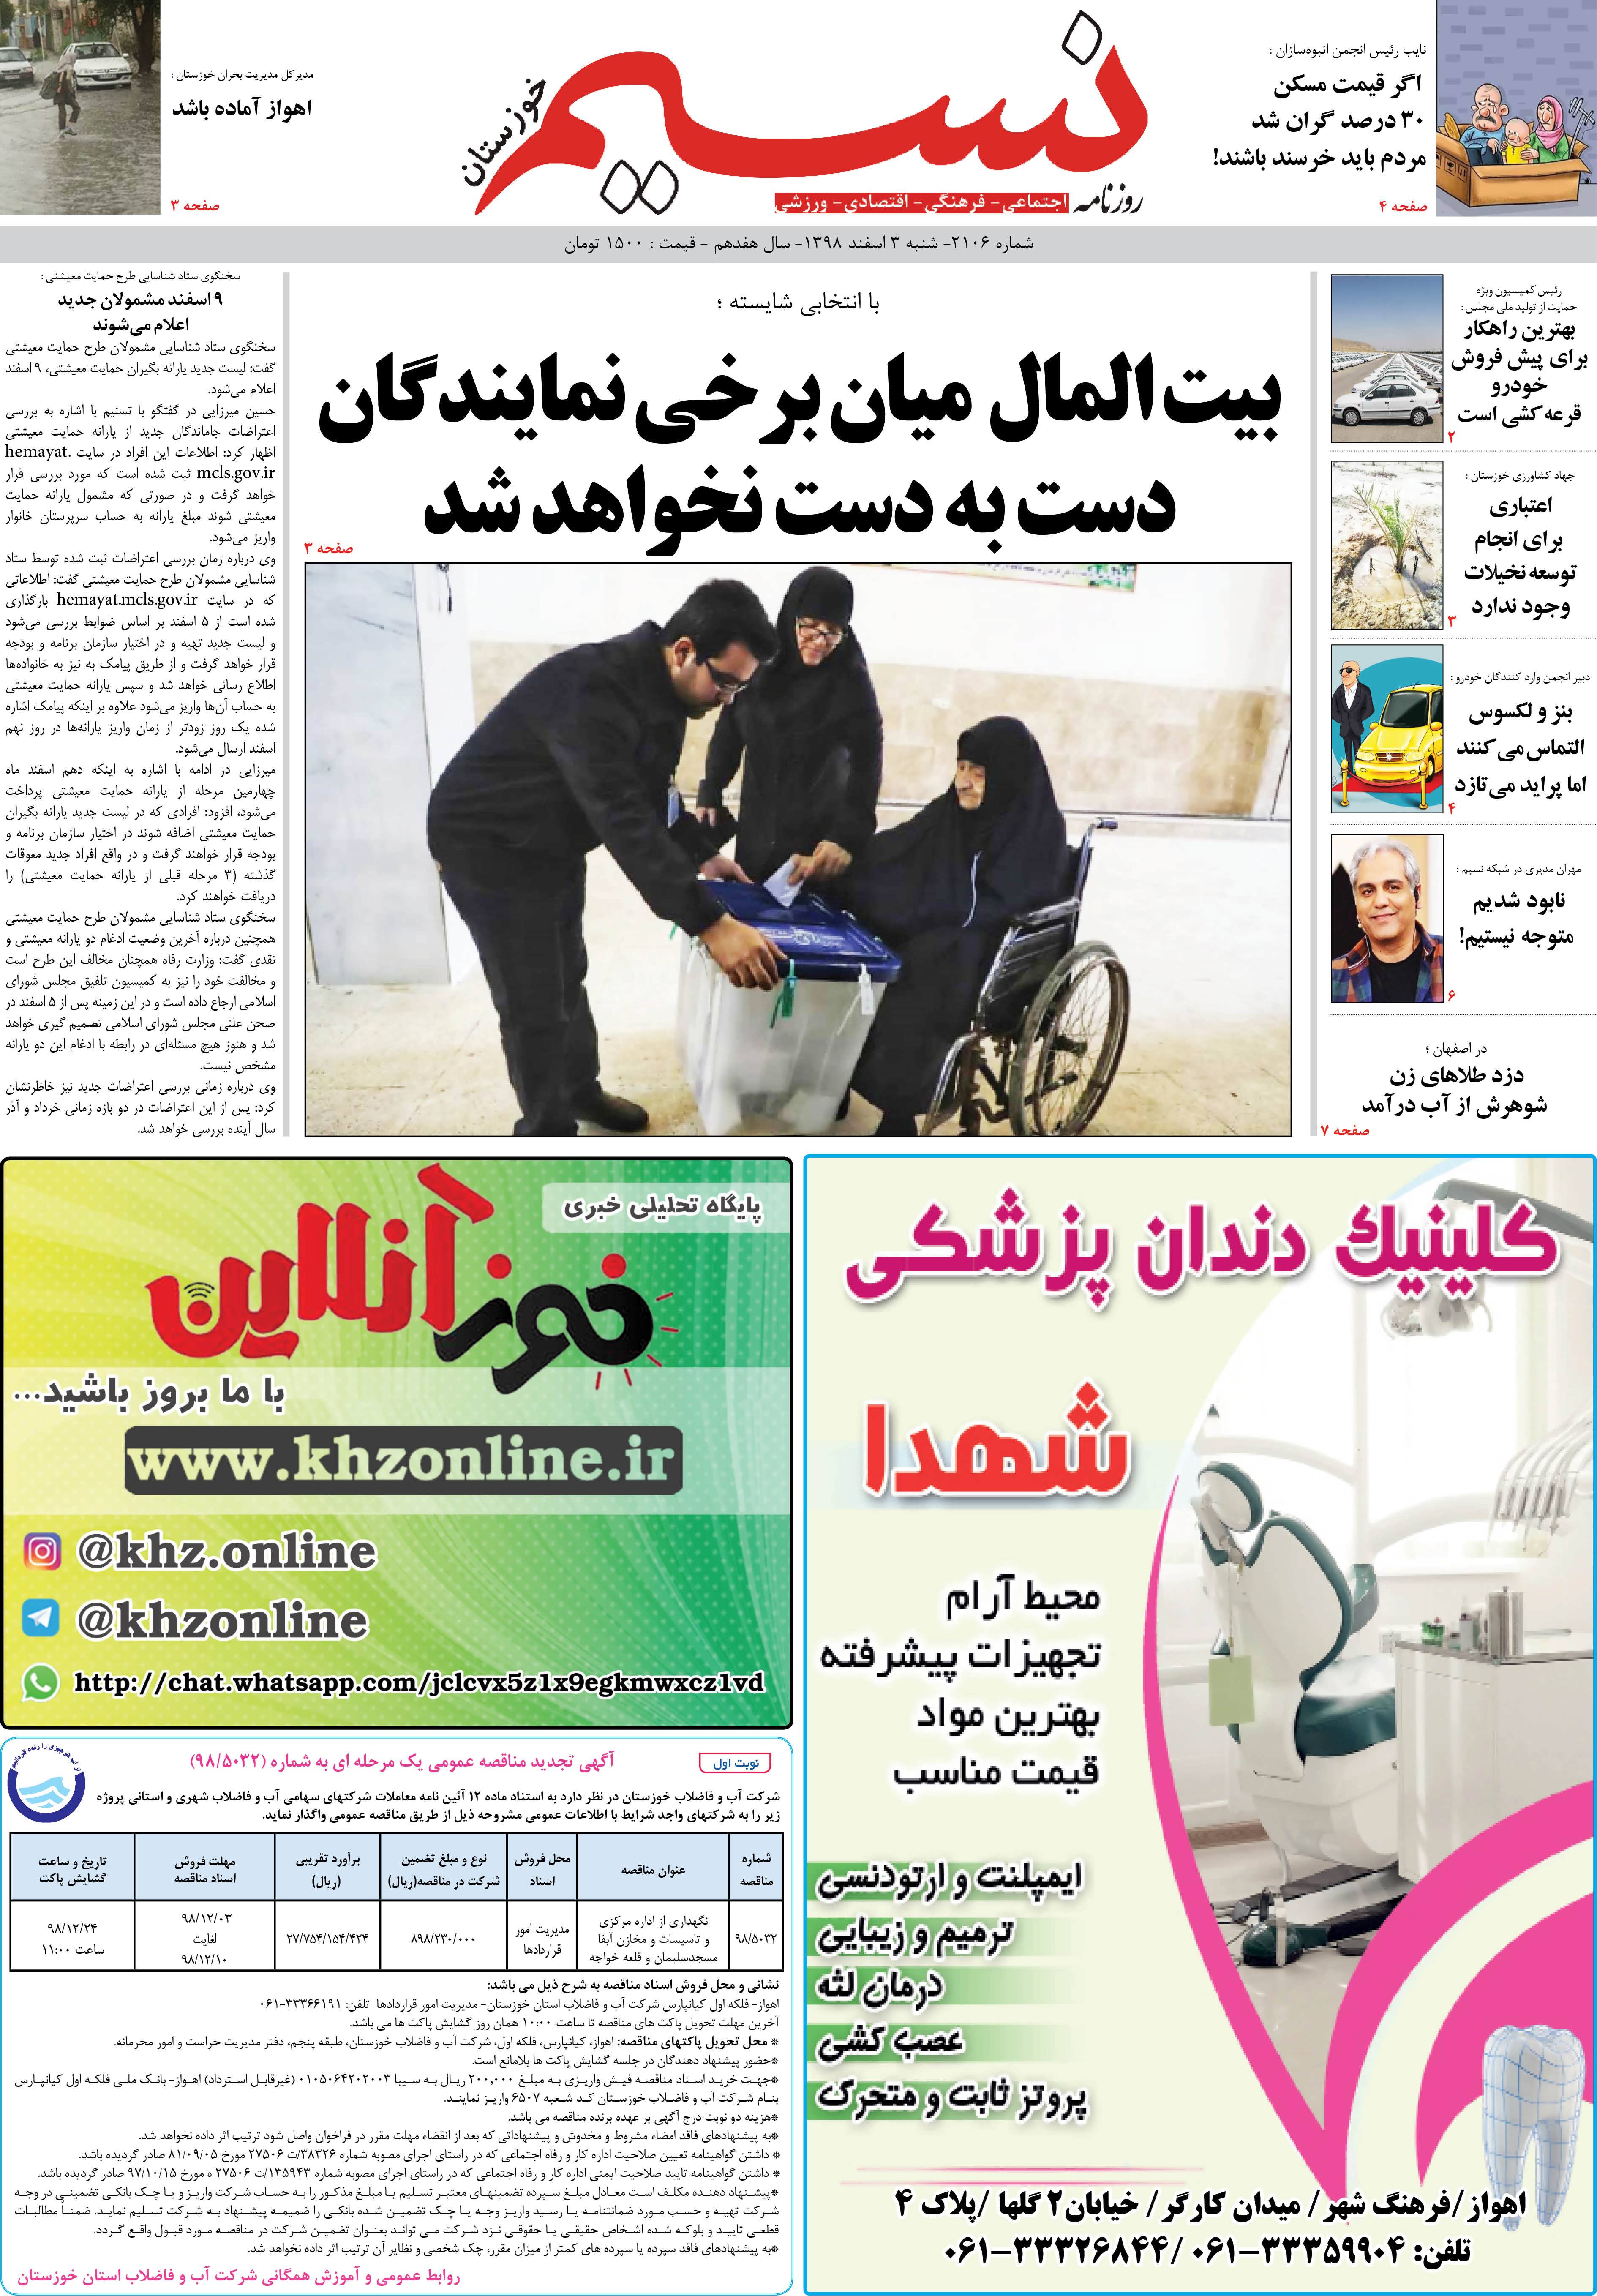 صفحه اصلی روزنامه نسیم شماره 2106 